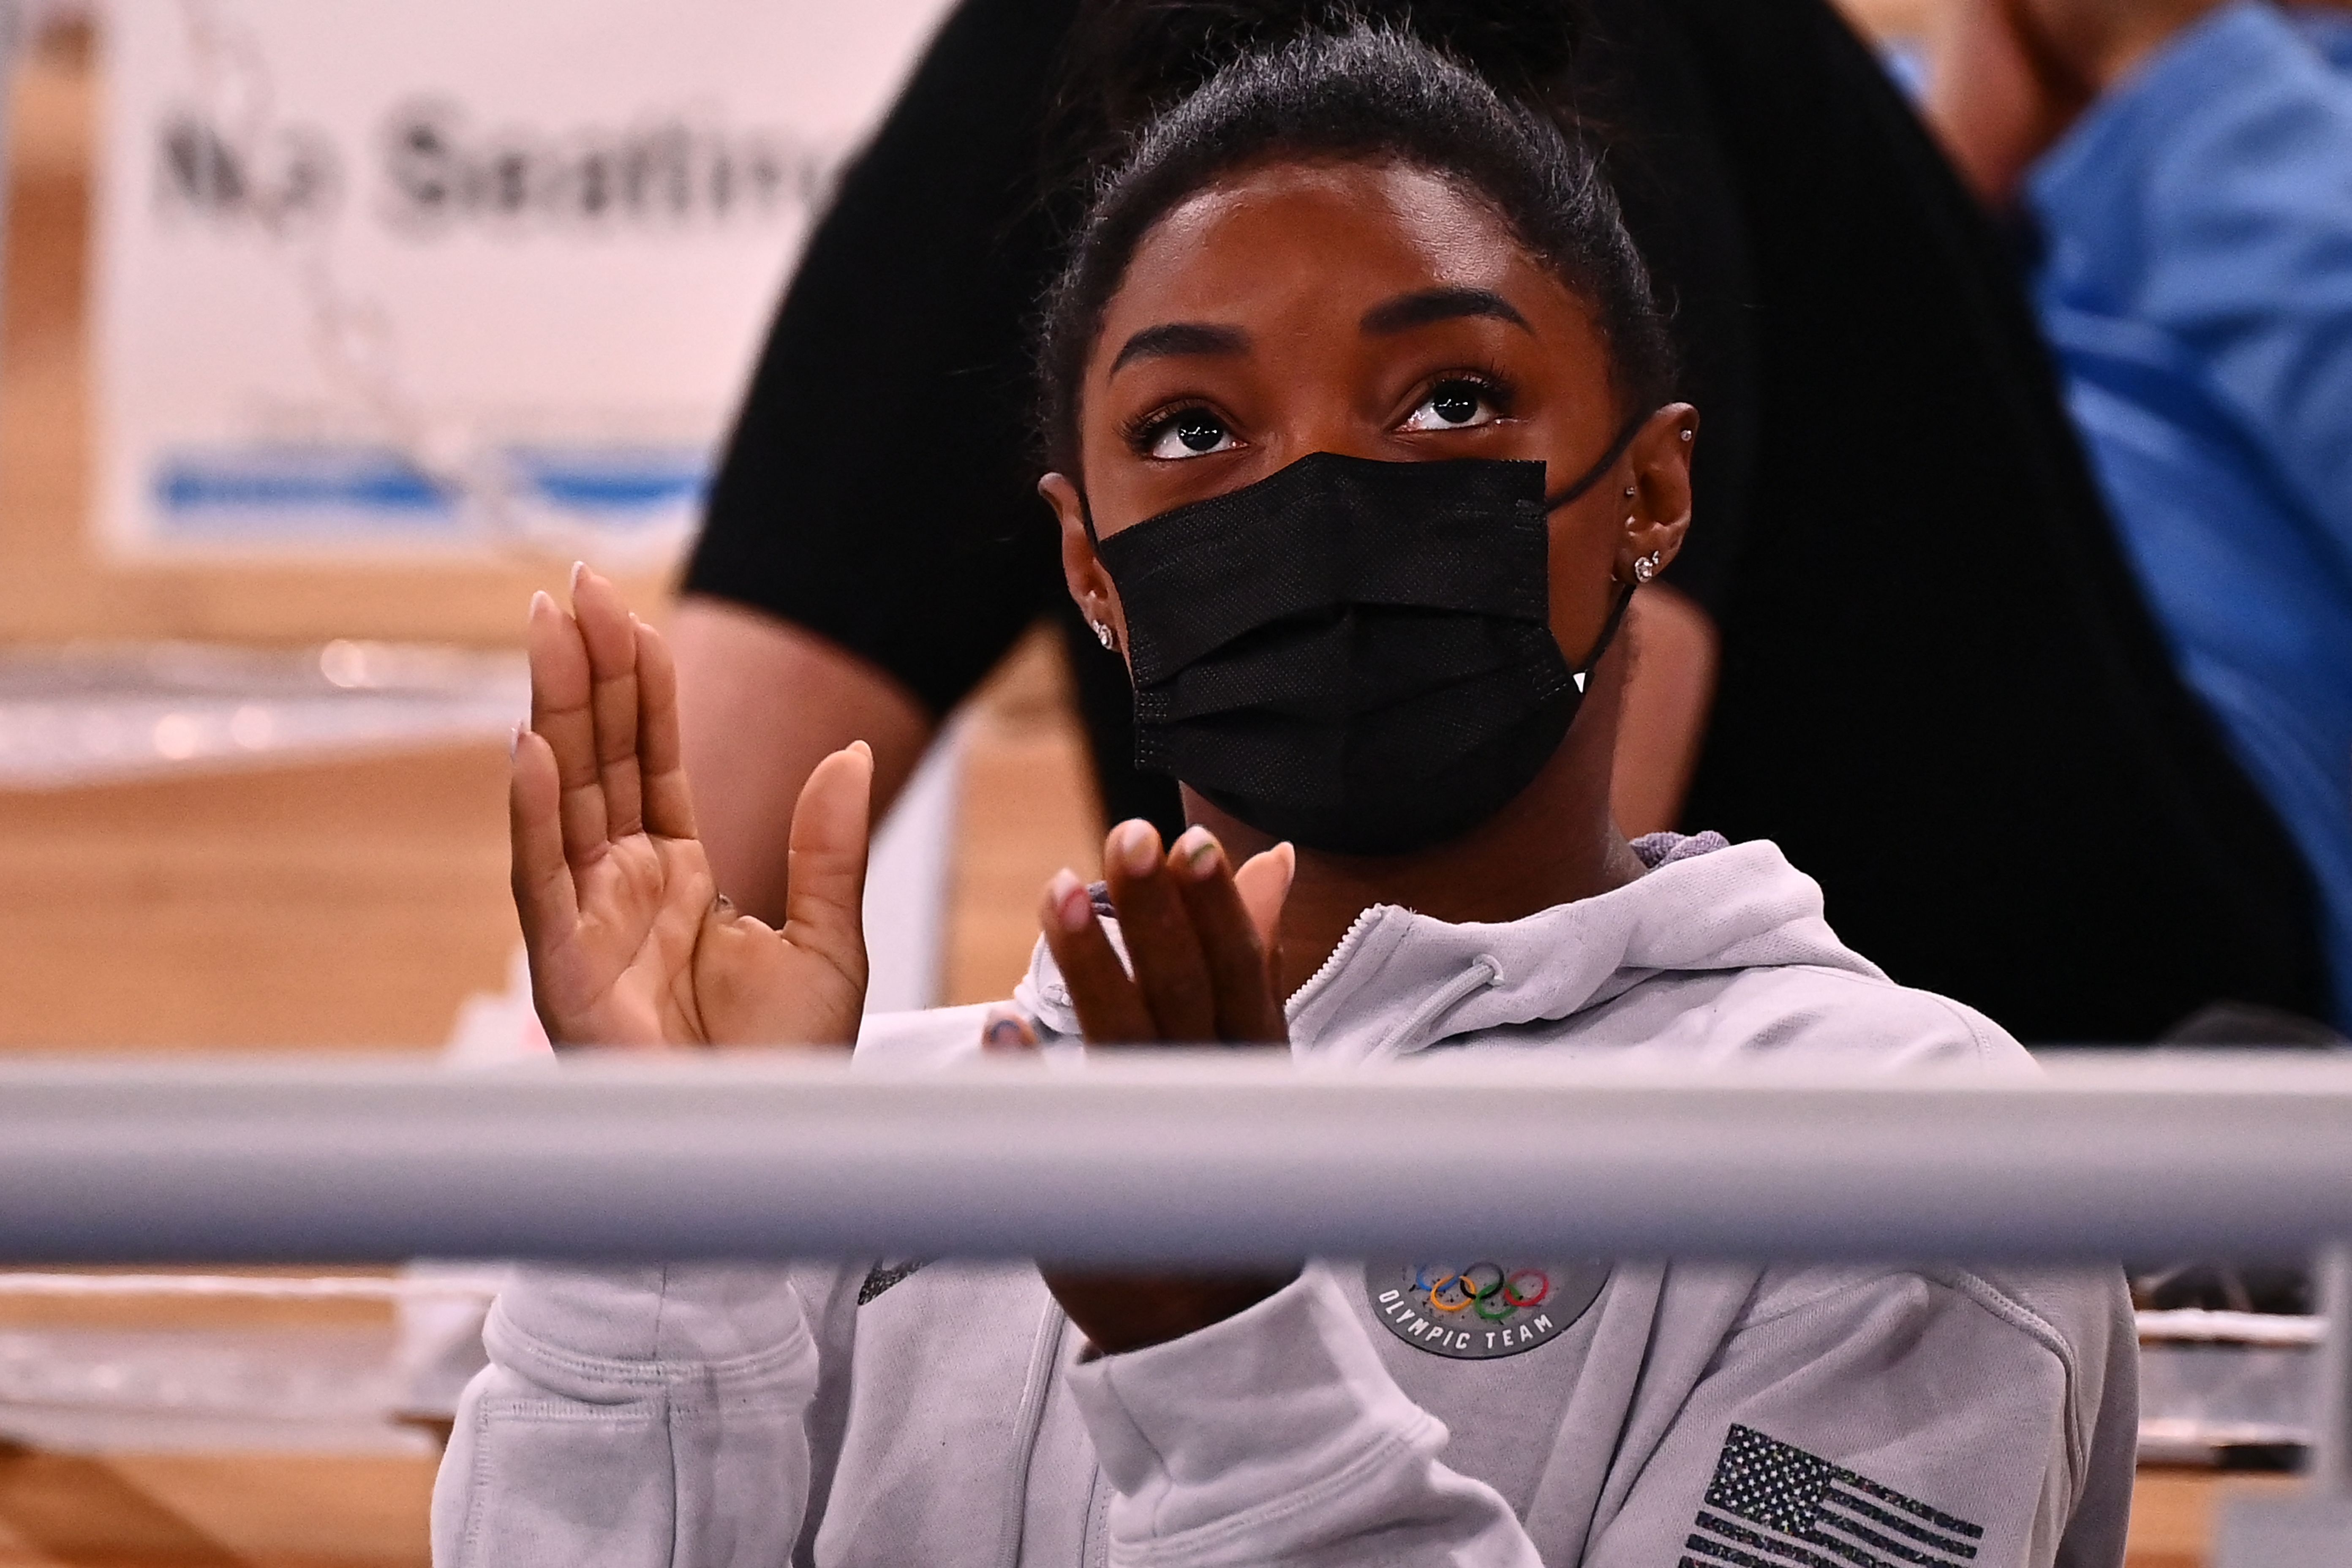 La gimnasta Simone Biles aplaude durante el evento de gimnasia artística. (Foto Prensa Libre: AFP)